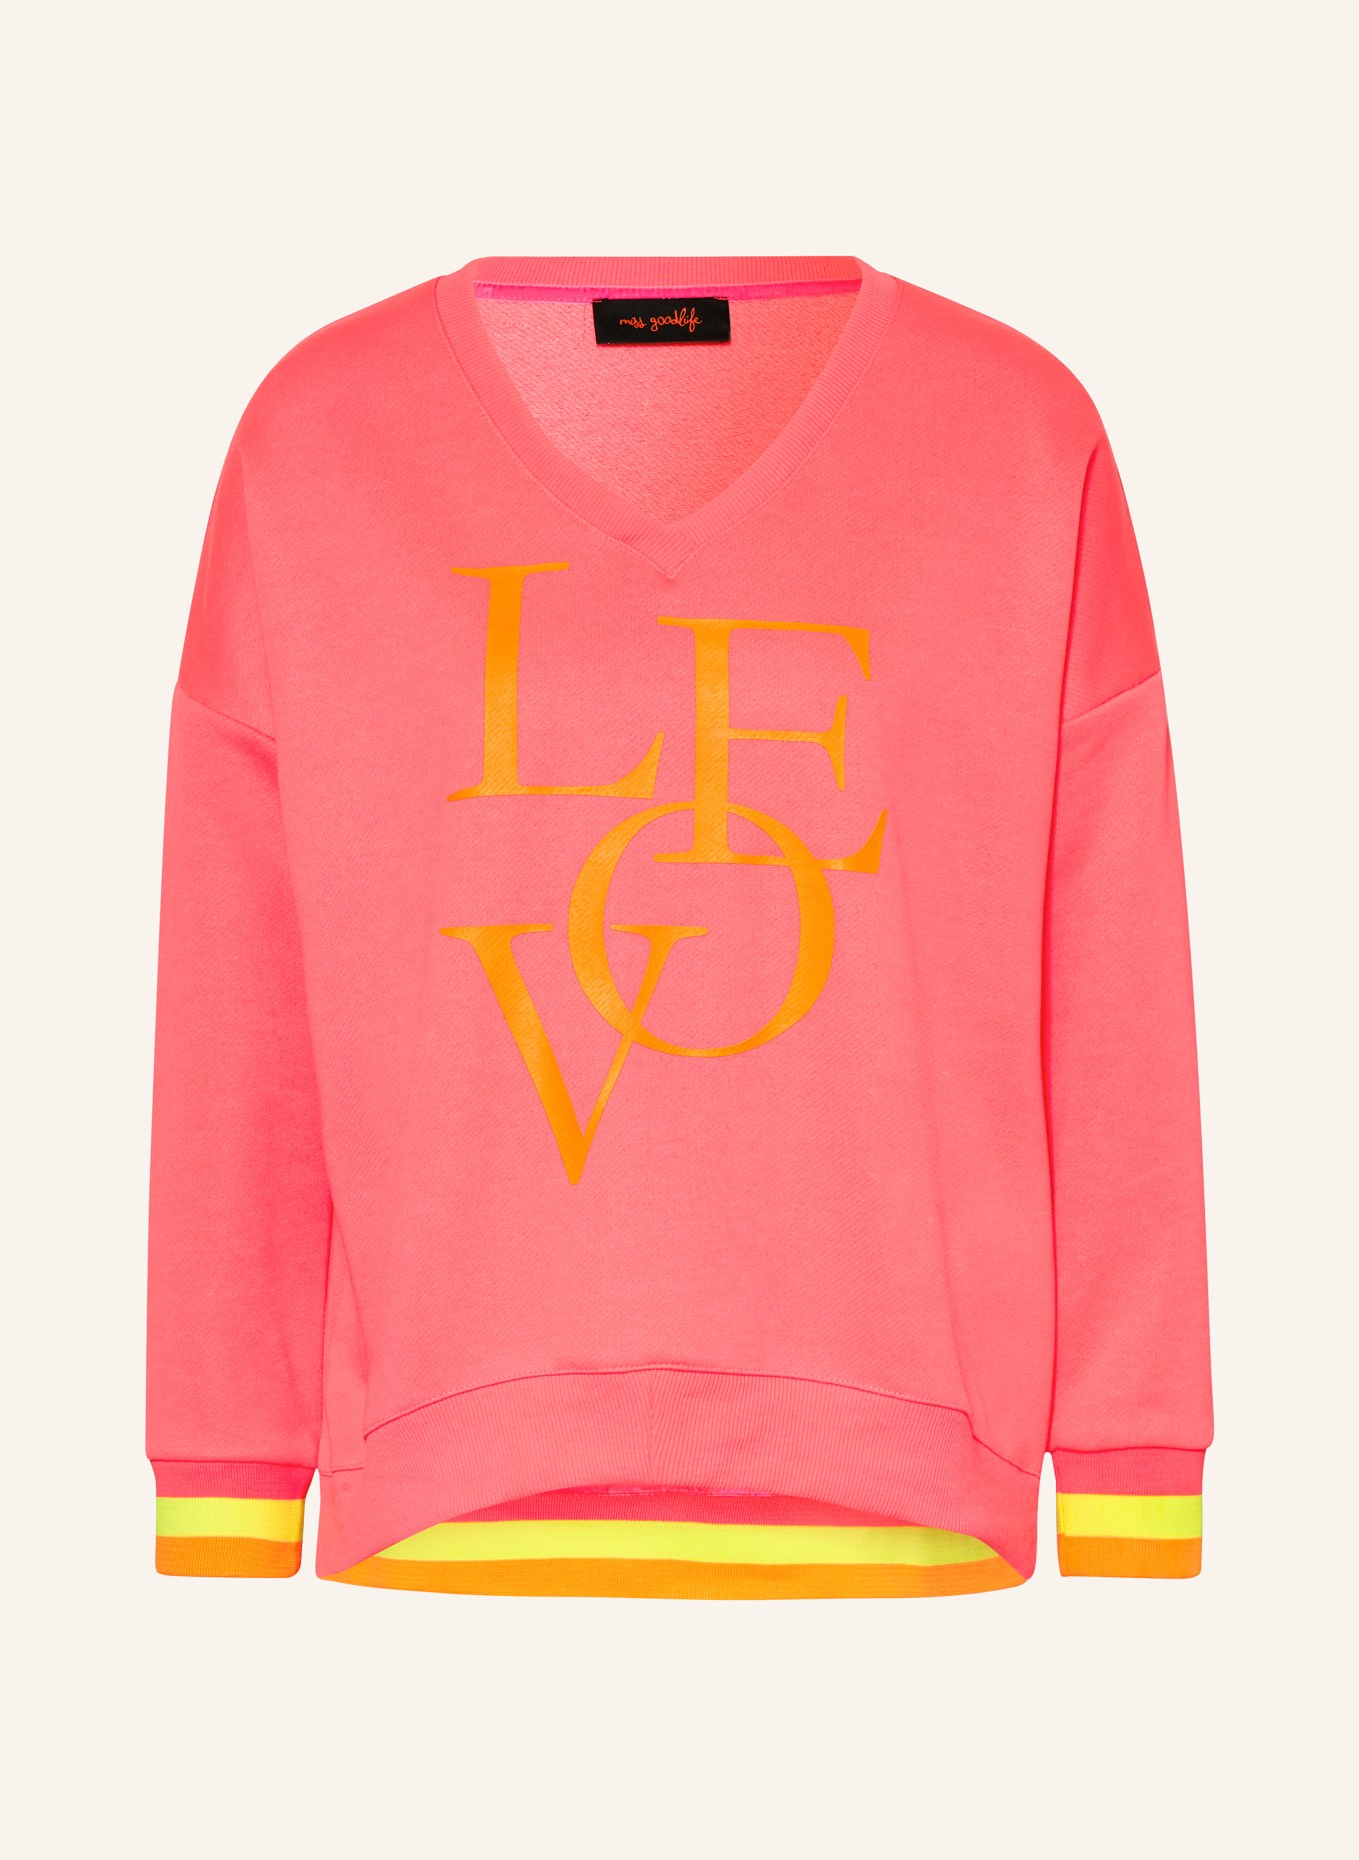 miss goodlife Sweatshirt, Color: NEON PINK/ NEON ORANGE (Image 1)